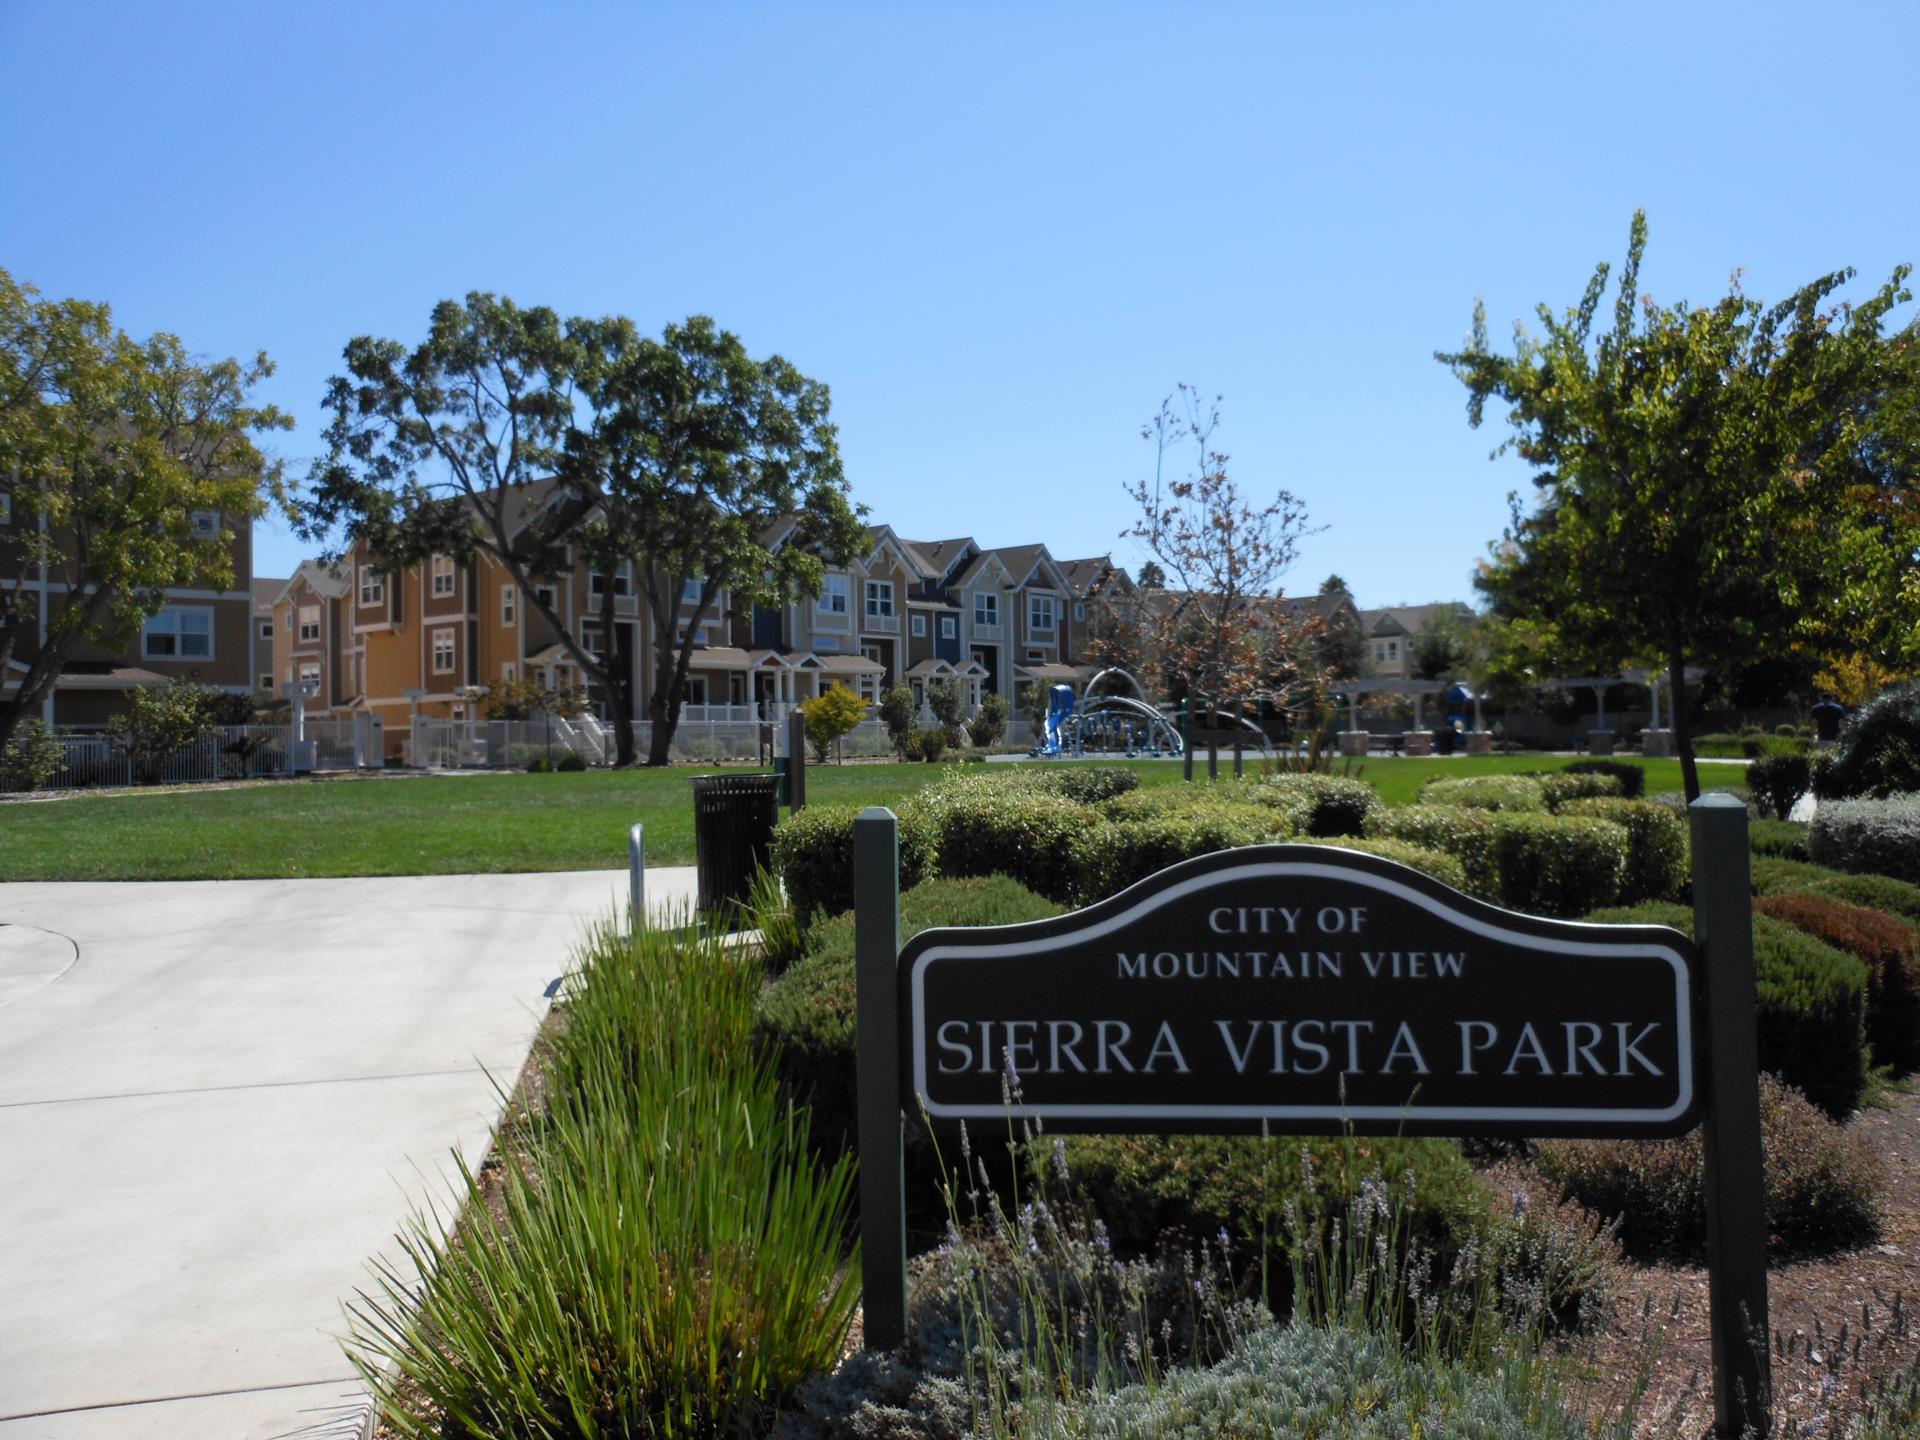 Sierra Vista Park